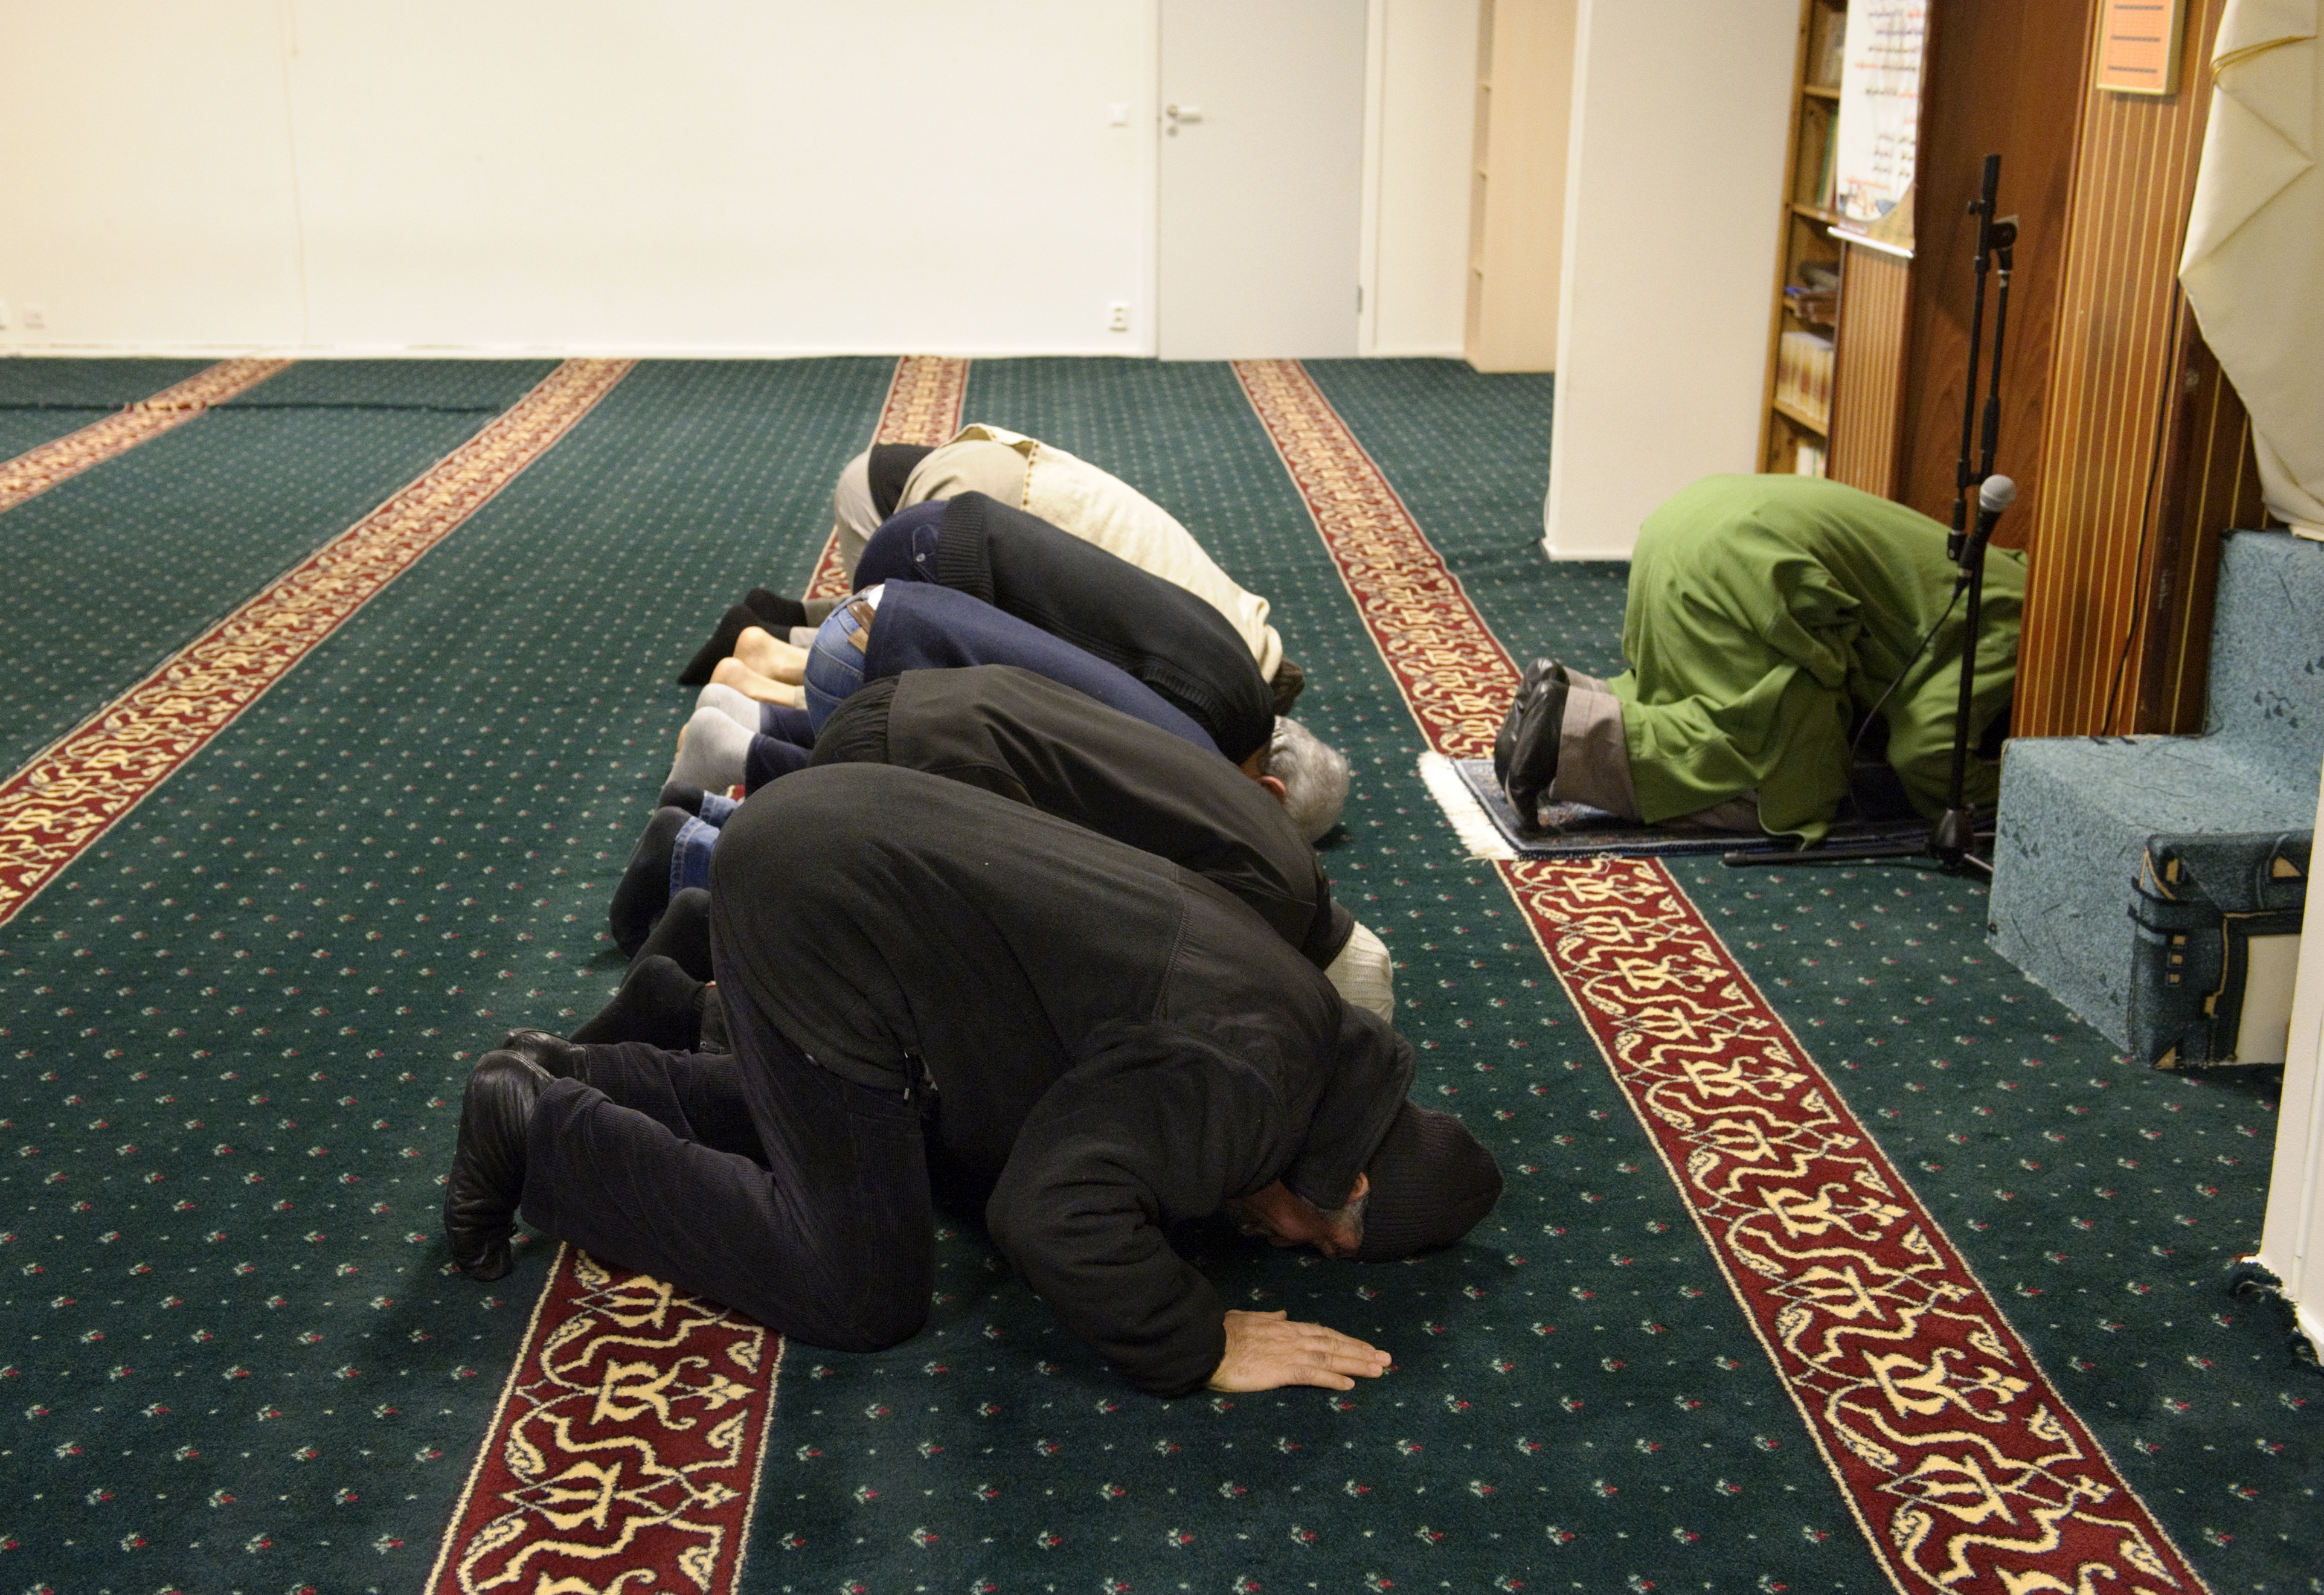 "Bakom fasaden i svenska moskéer" - heter denna veckas Uppdrag granskning som redan upprört många.